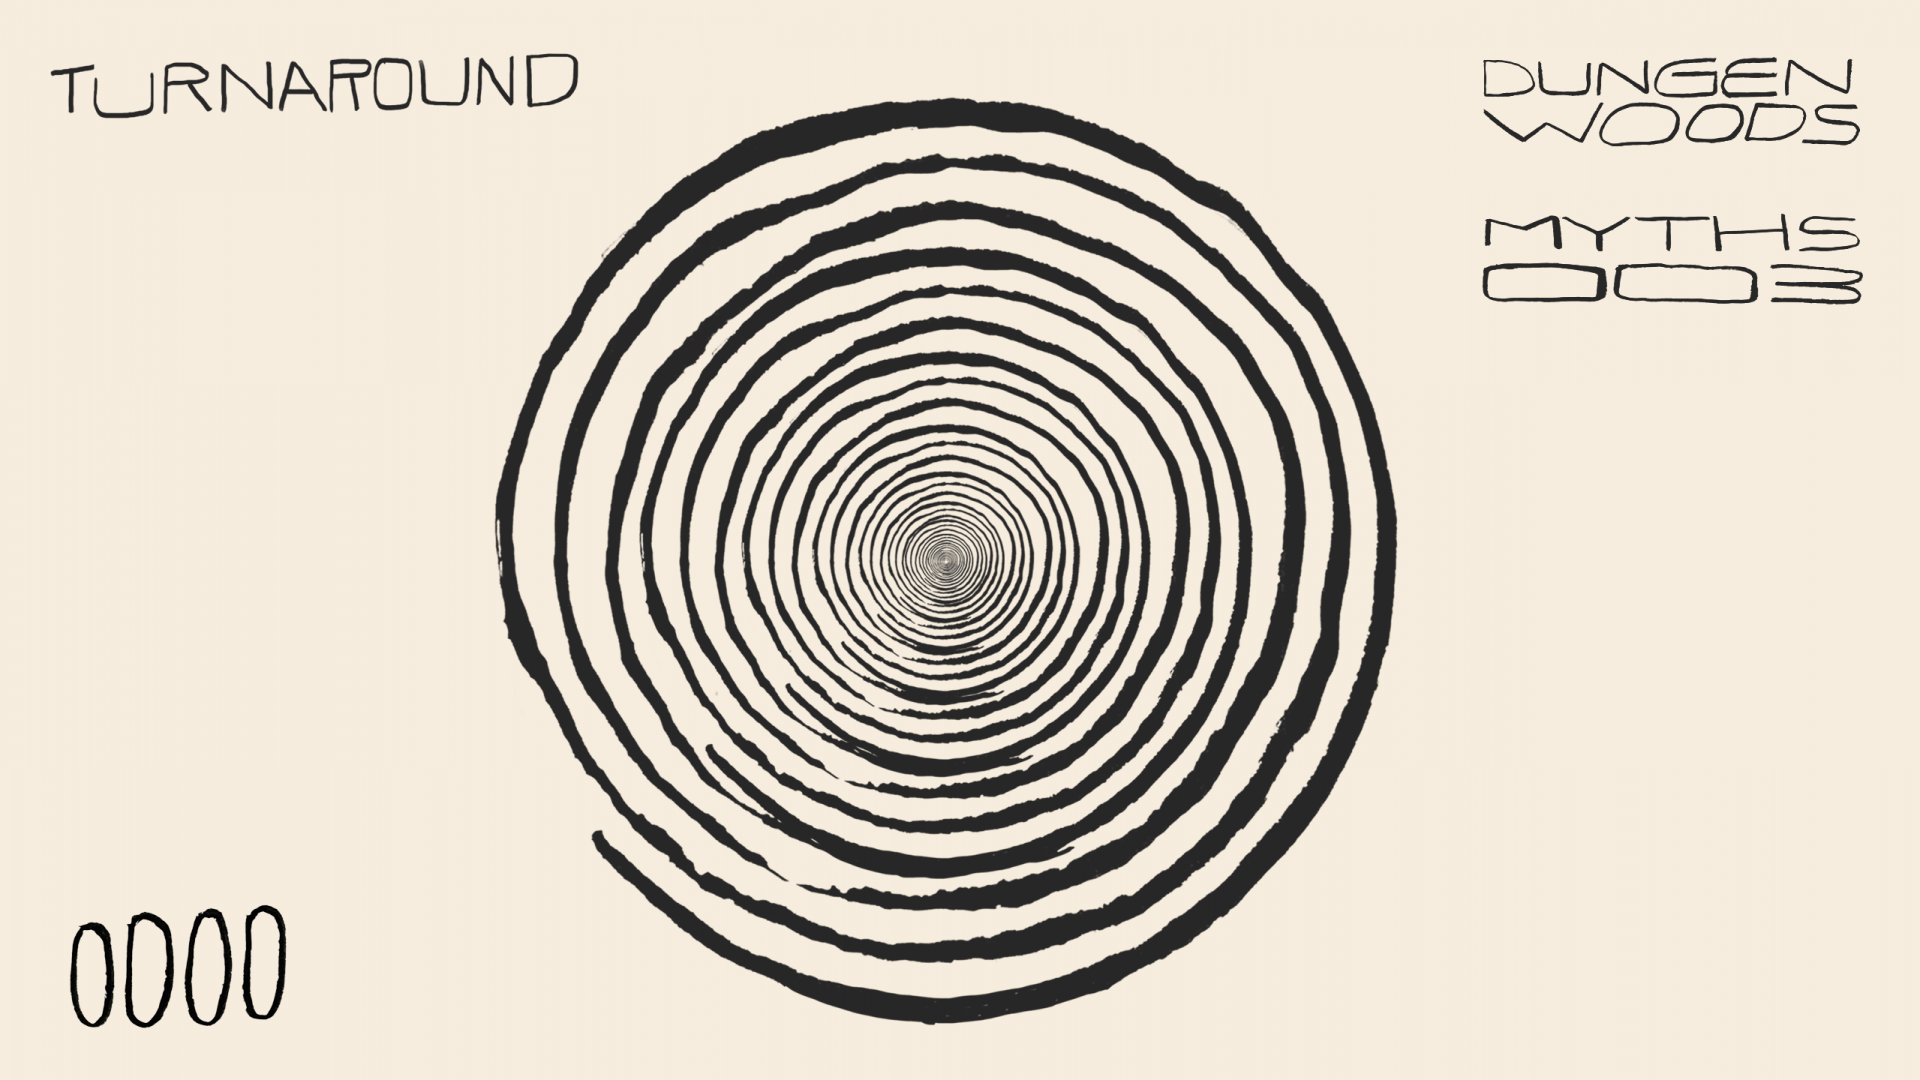 Dungen and Woods - Turn Around